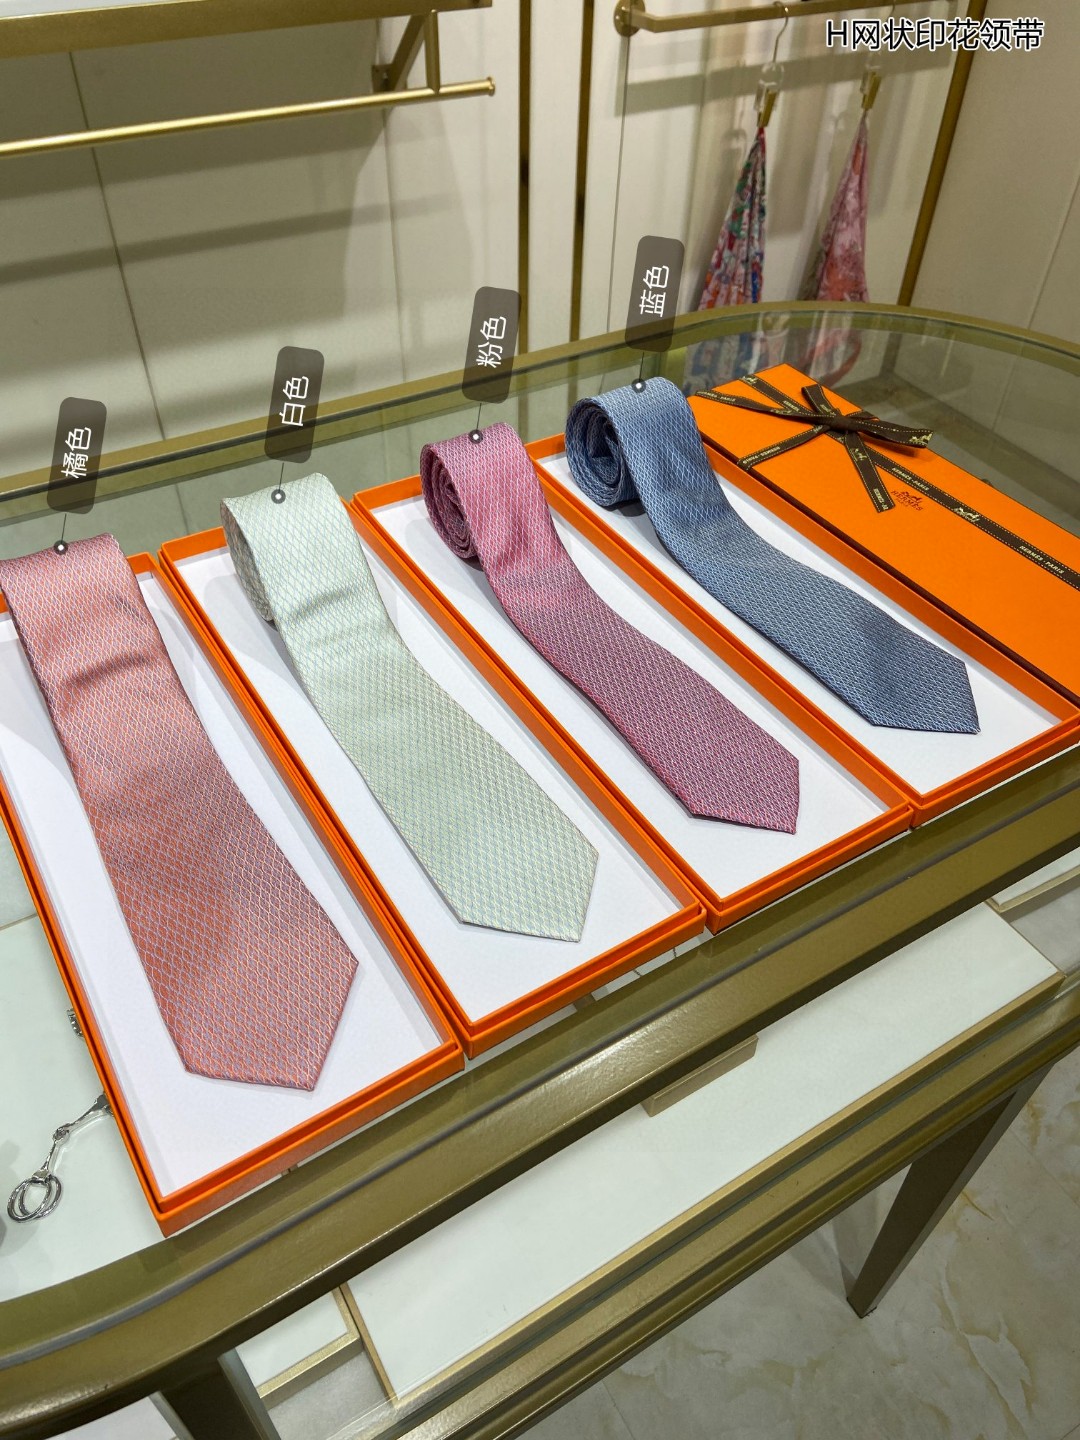 男士新款领带系列H网状印花领带稀有H